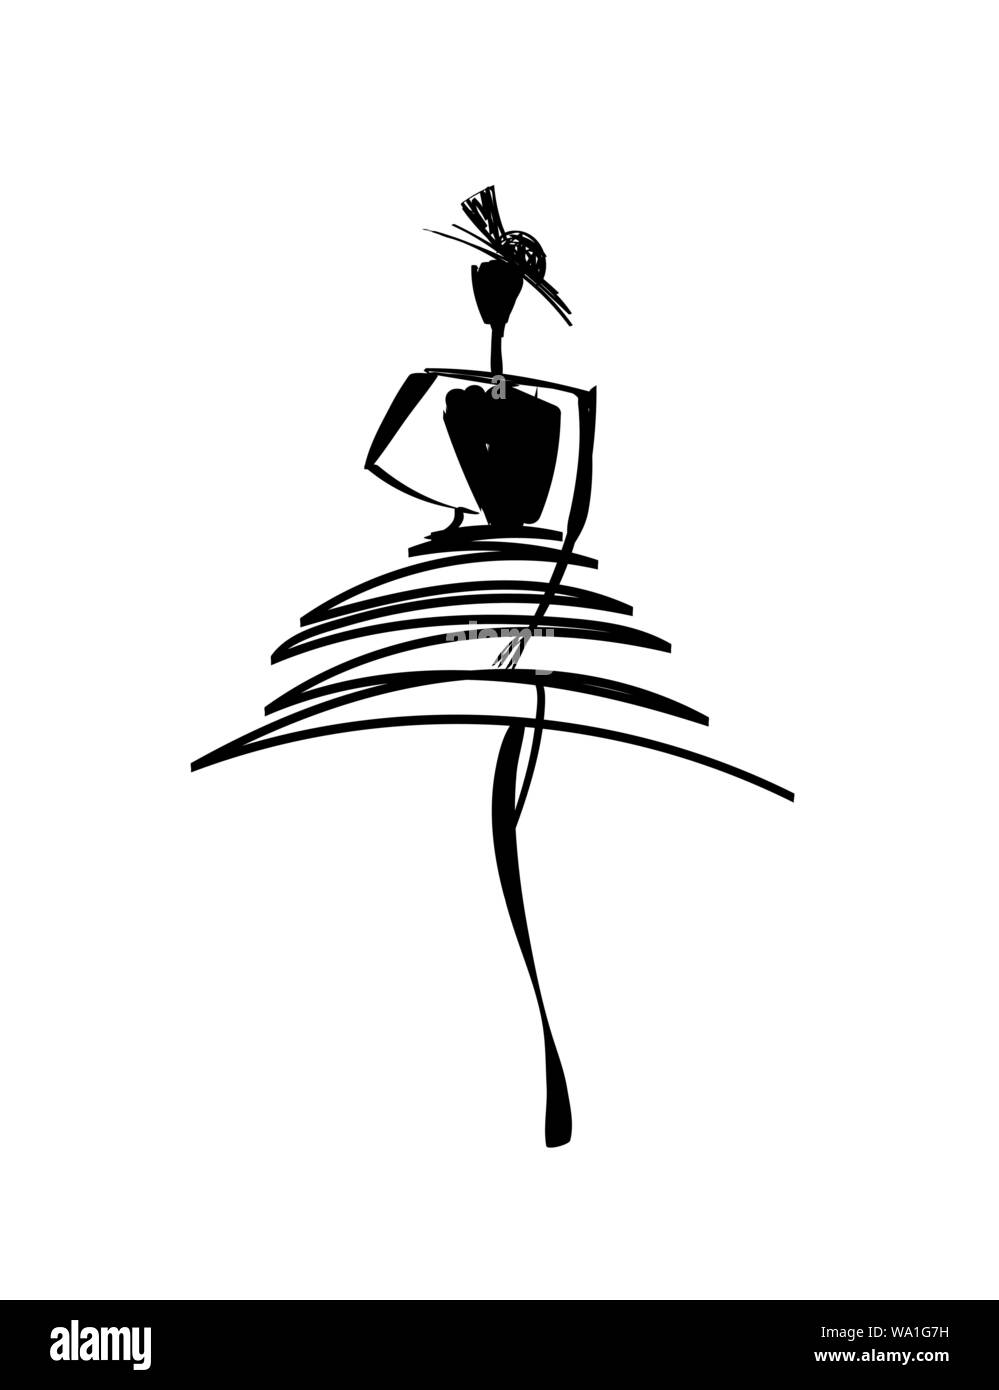 Modelli di moda Bozzetto disegnato a mano silhouette pop art Illustrazione Vettoriale